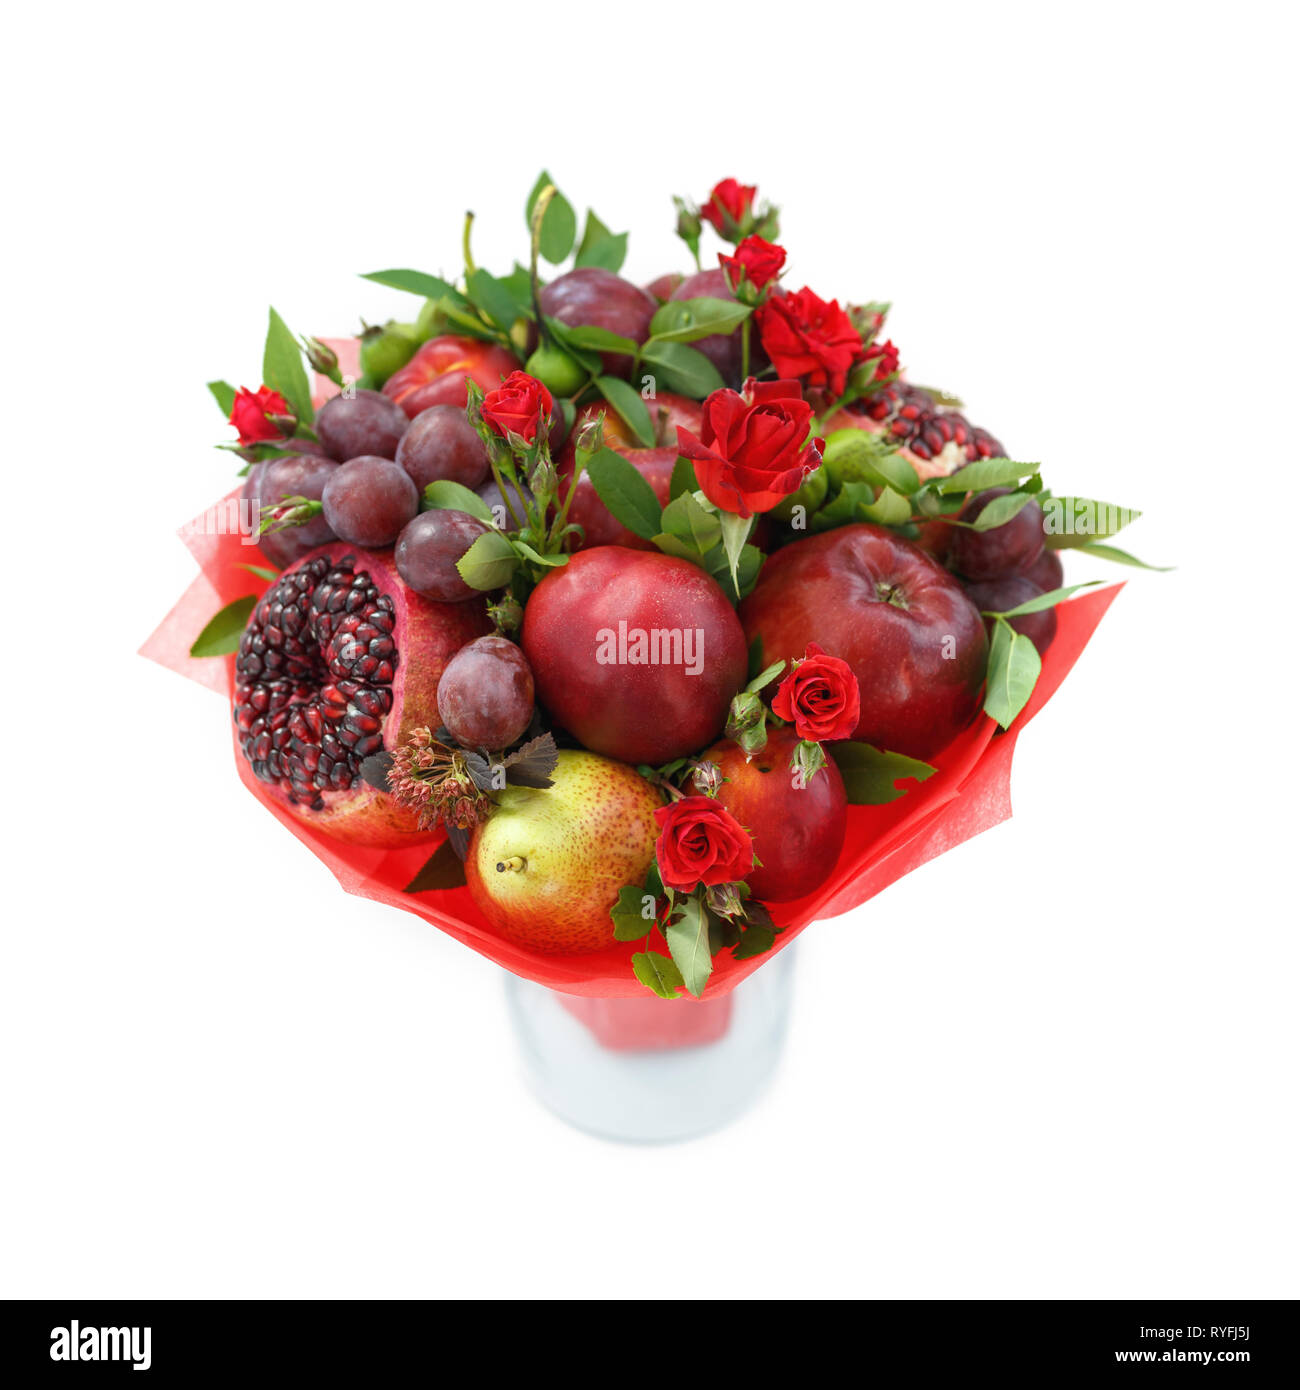 Bouquet commestibile costituito di melograno, mele, susine e scarlet rose in piedi in un vaso isolato su sfondo bianco Foto Stock